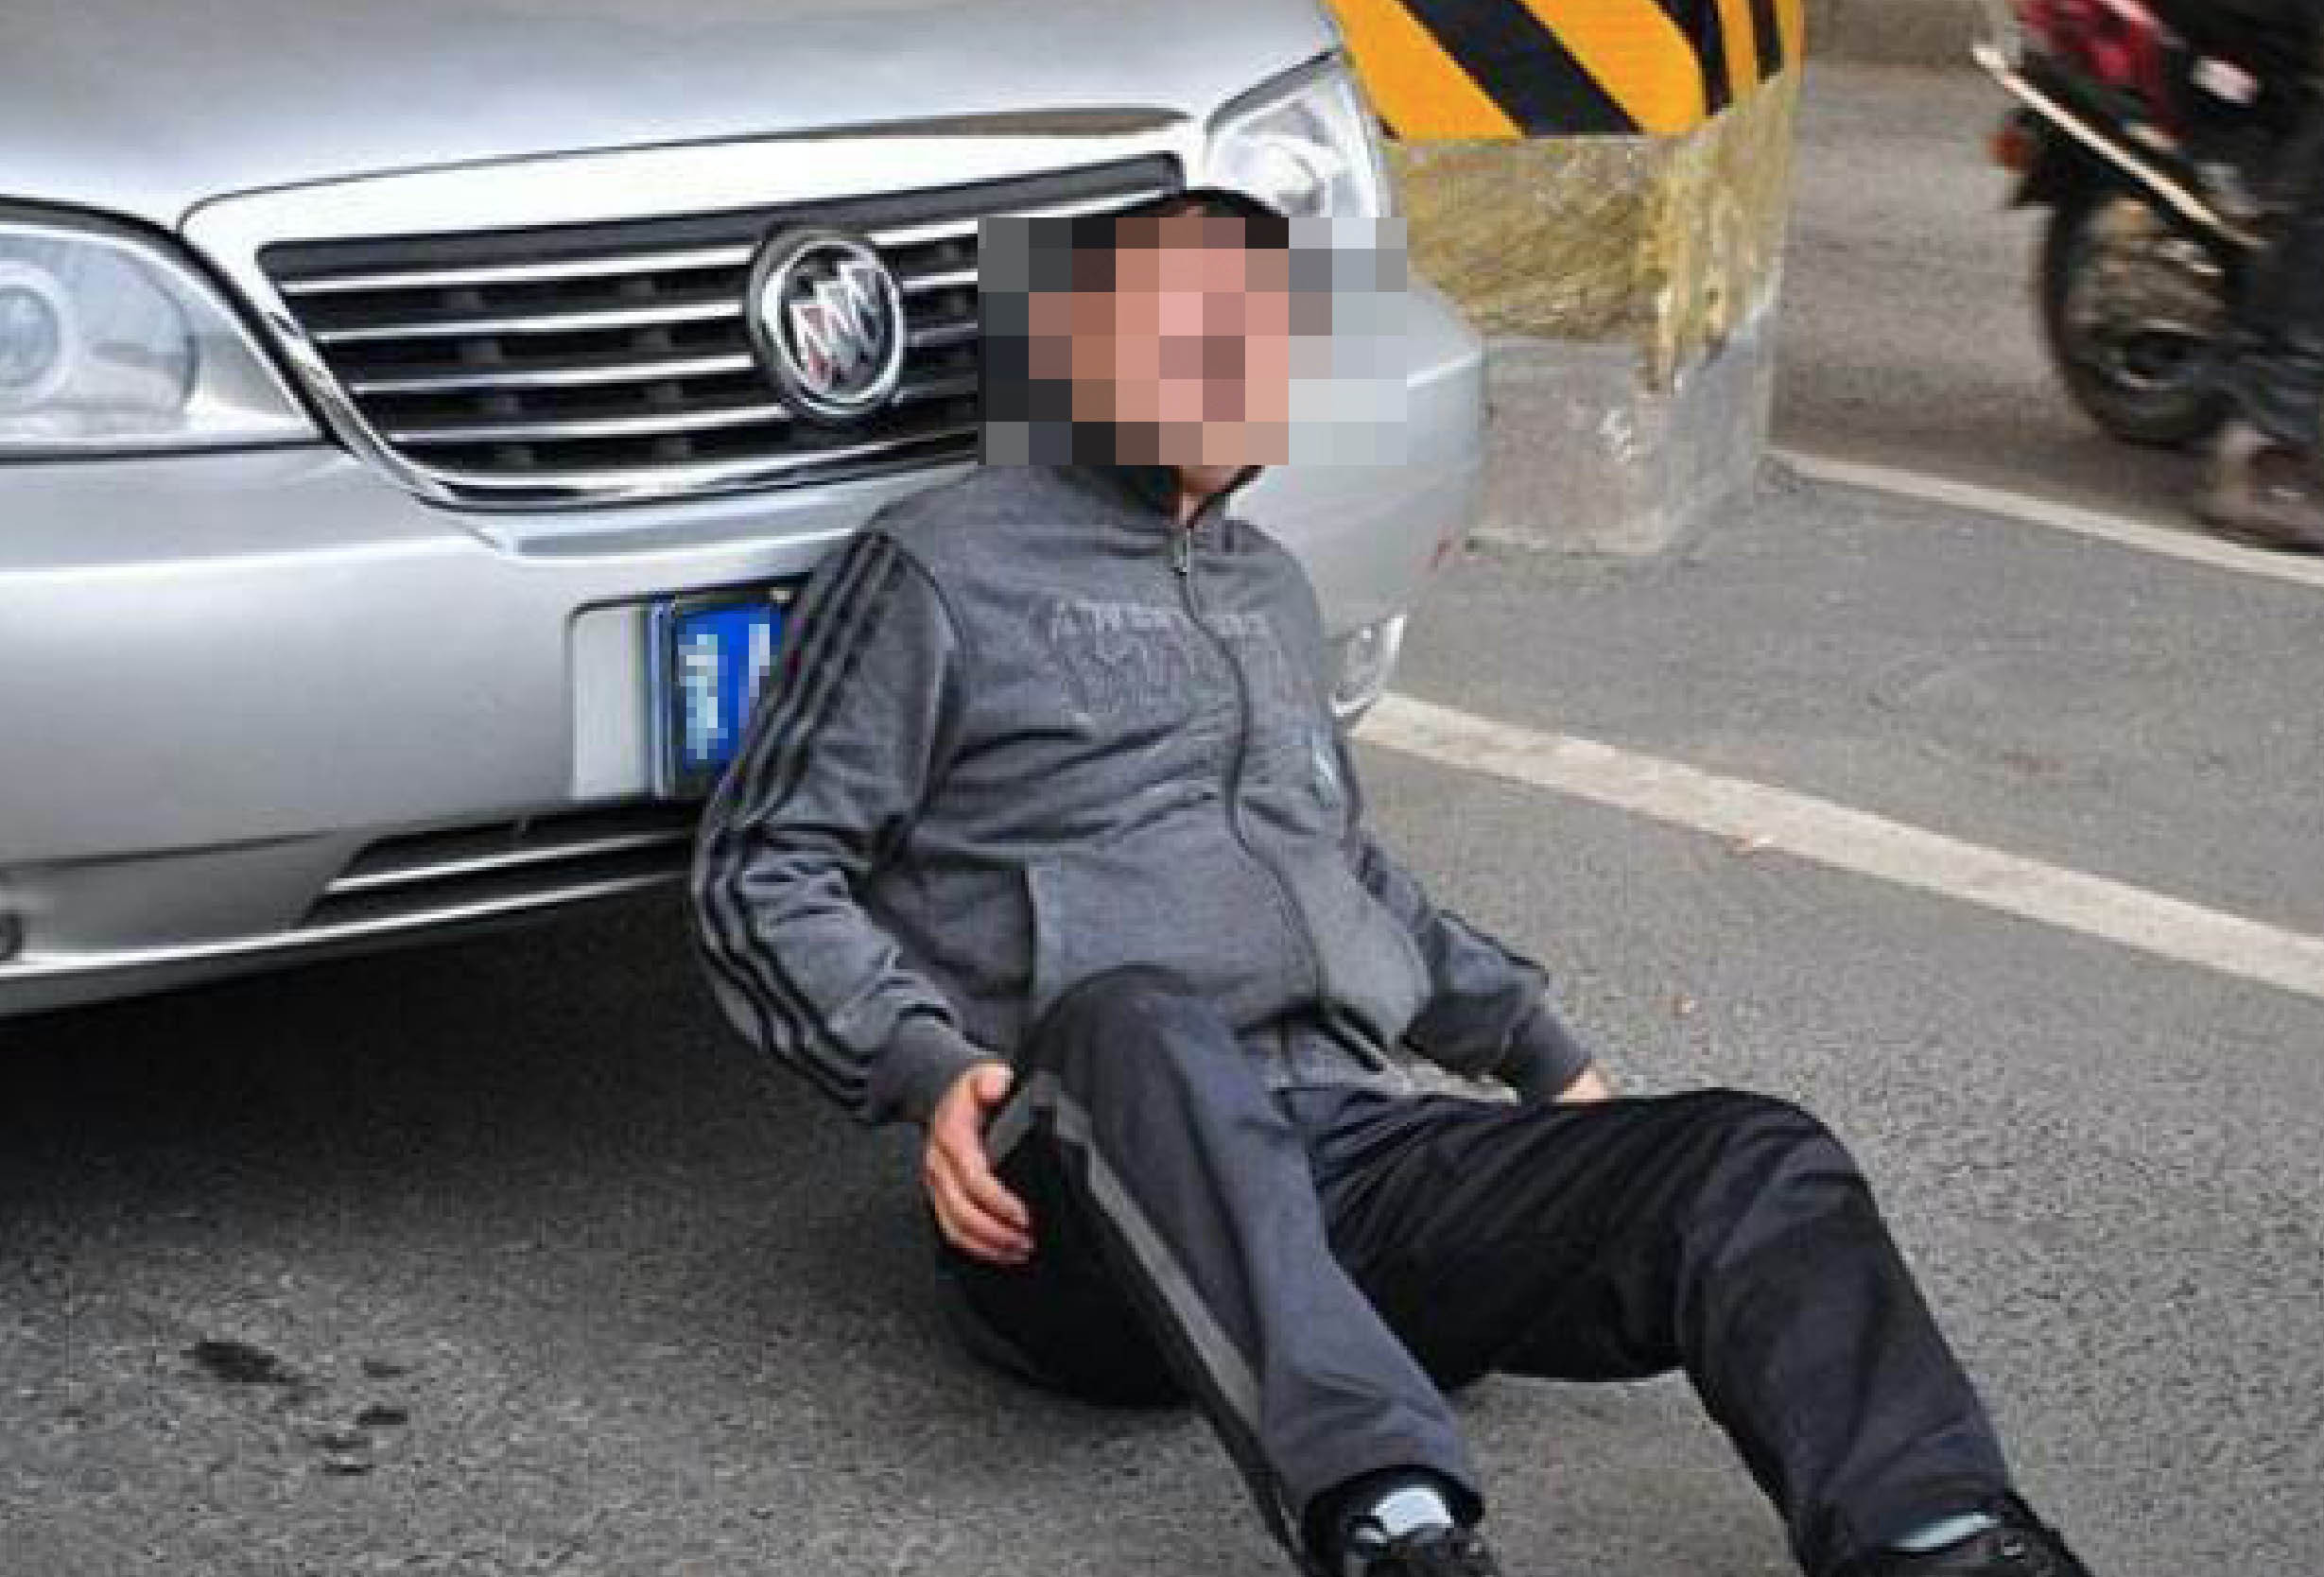 广州司机闯红灯致13伤 目击者称有人被车带出几米|闯红灯|目击者|行人_新浪新闻